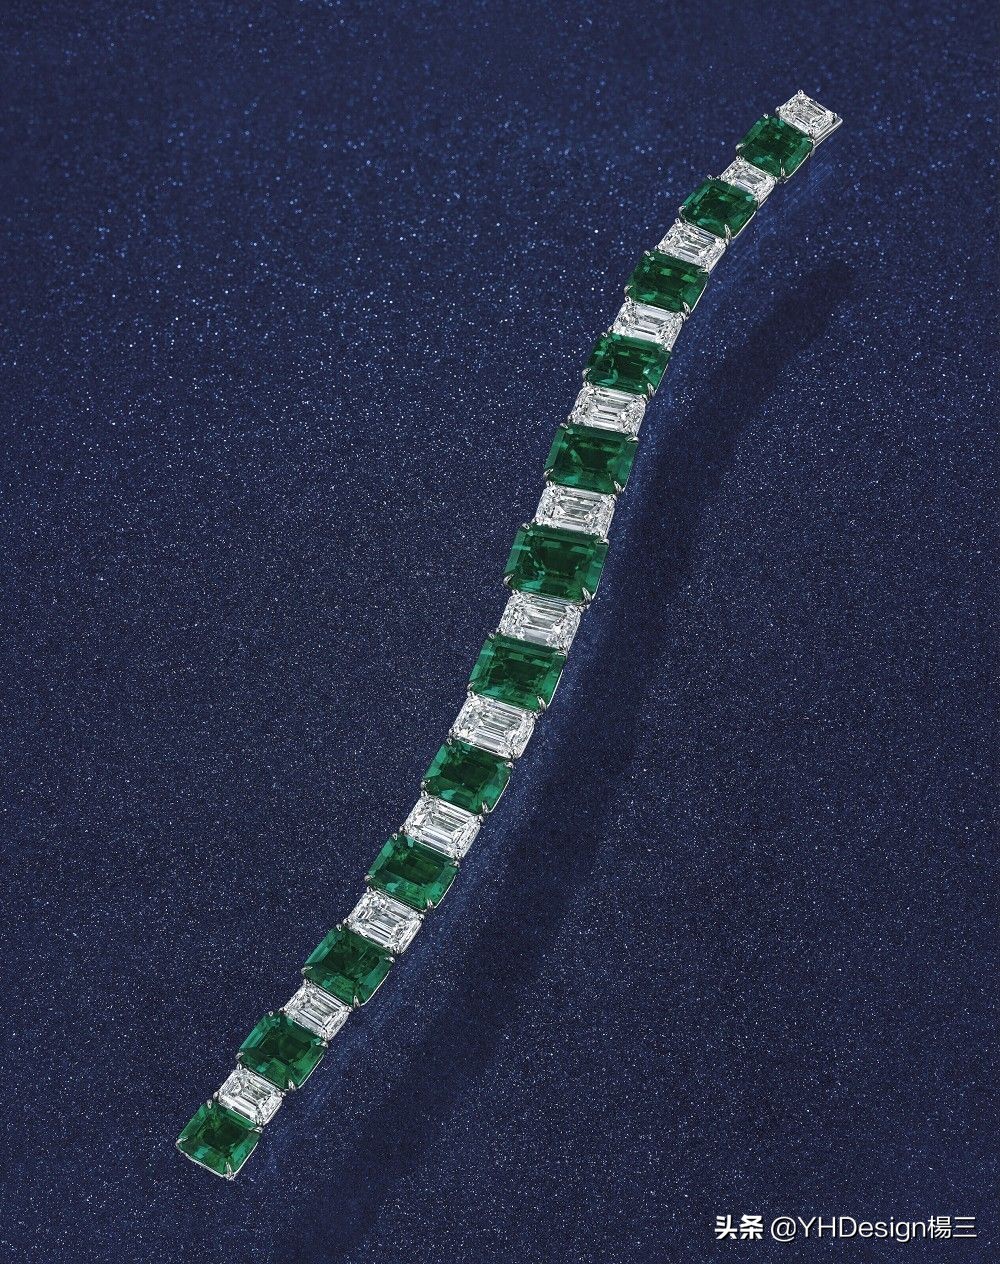 每日珠宝丨香港珠宝春拍：帝王绿翡翠项链6903万港币成交